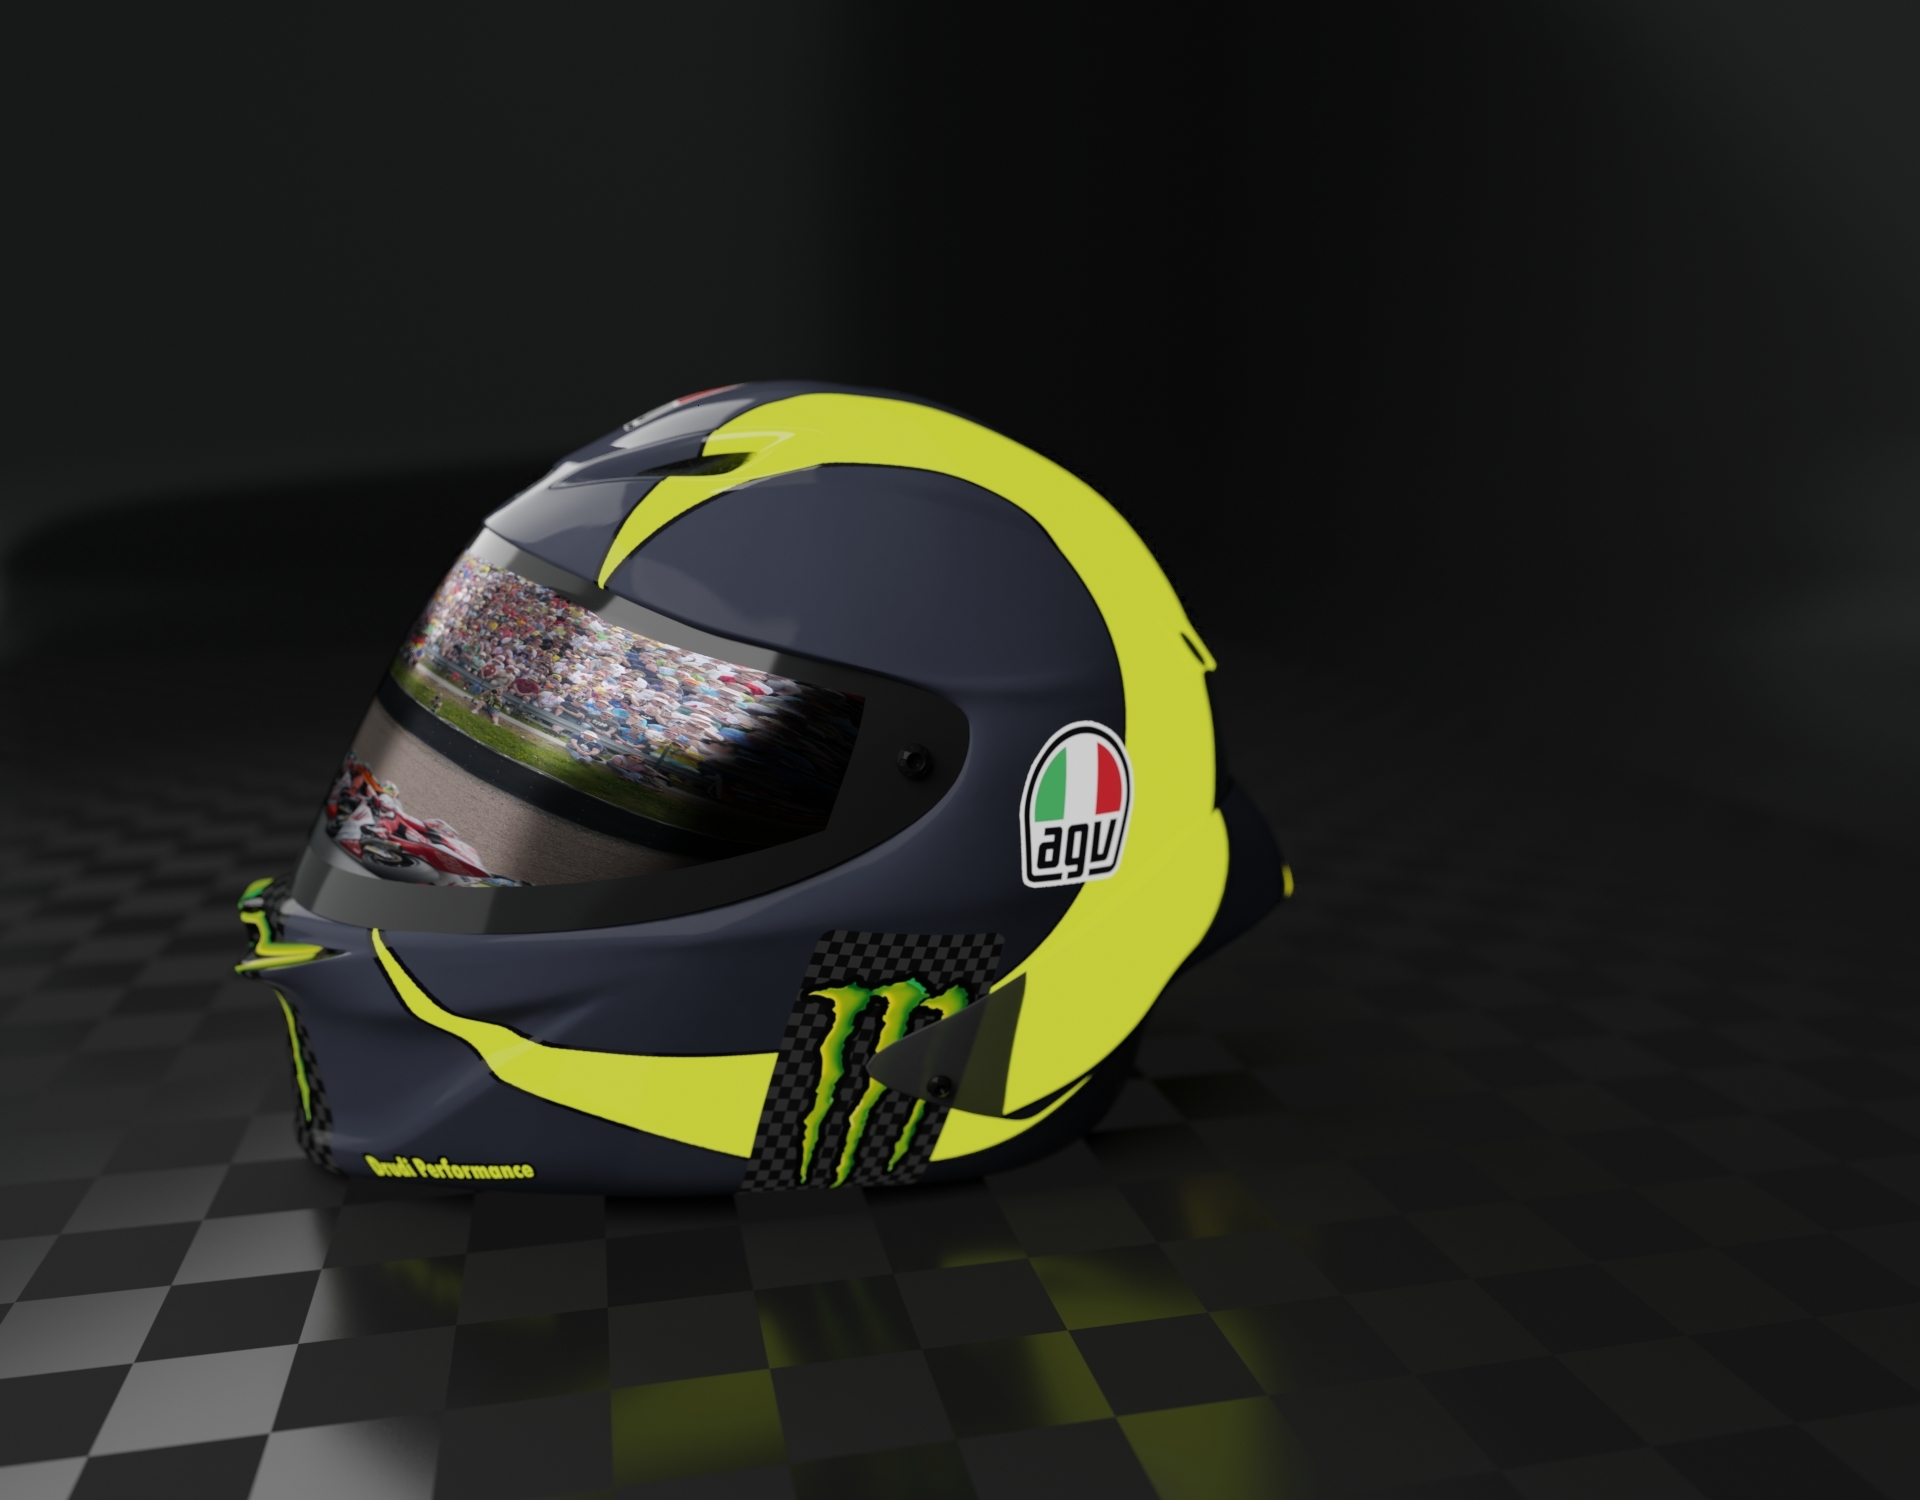 Motogp helmet yamaha 3D model TurboSquid 1540570